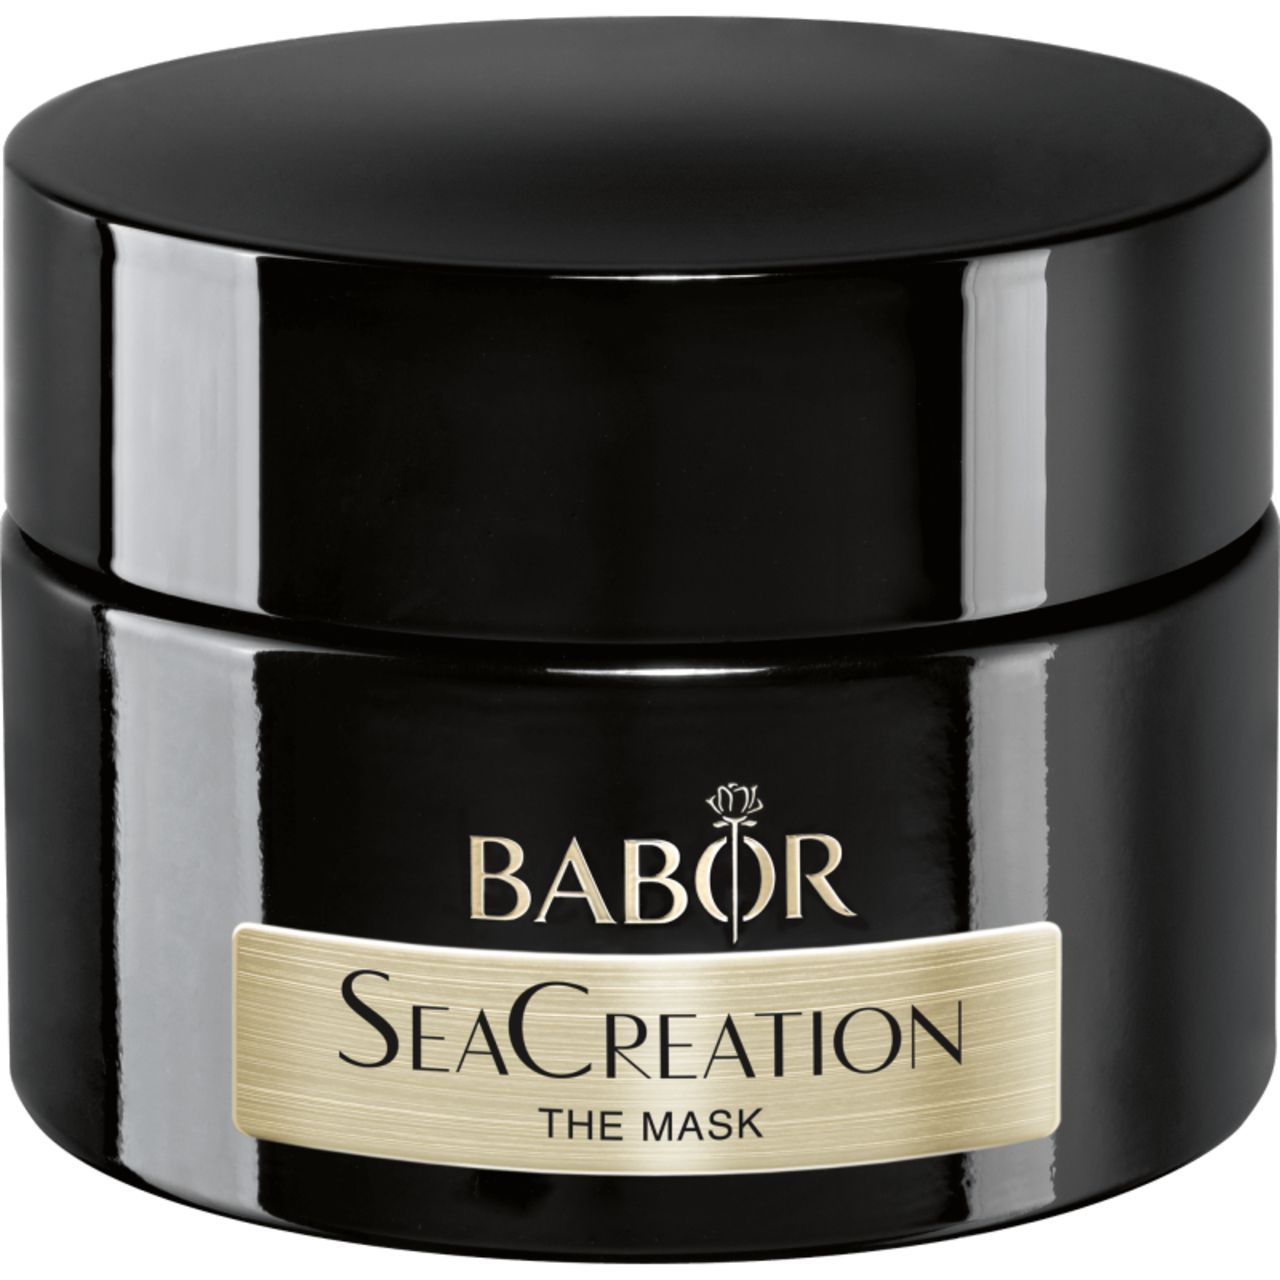 Babor, SeaCreation The Mask